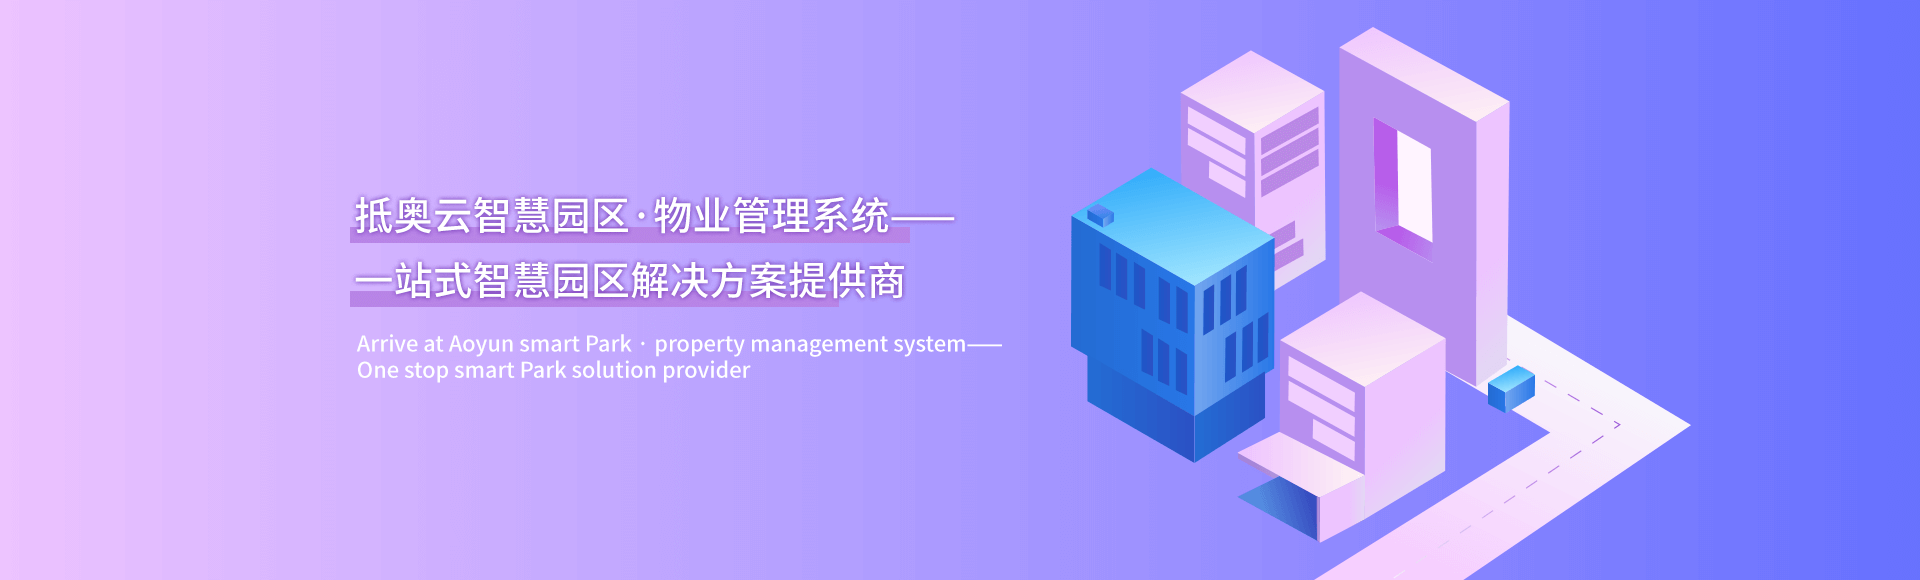 广州智能建模平台开发案例——将“机器学习、商业智能”这些名词，转化为智能建模系统-轮播图1